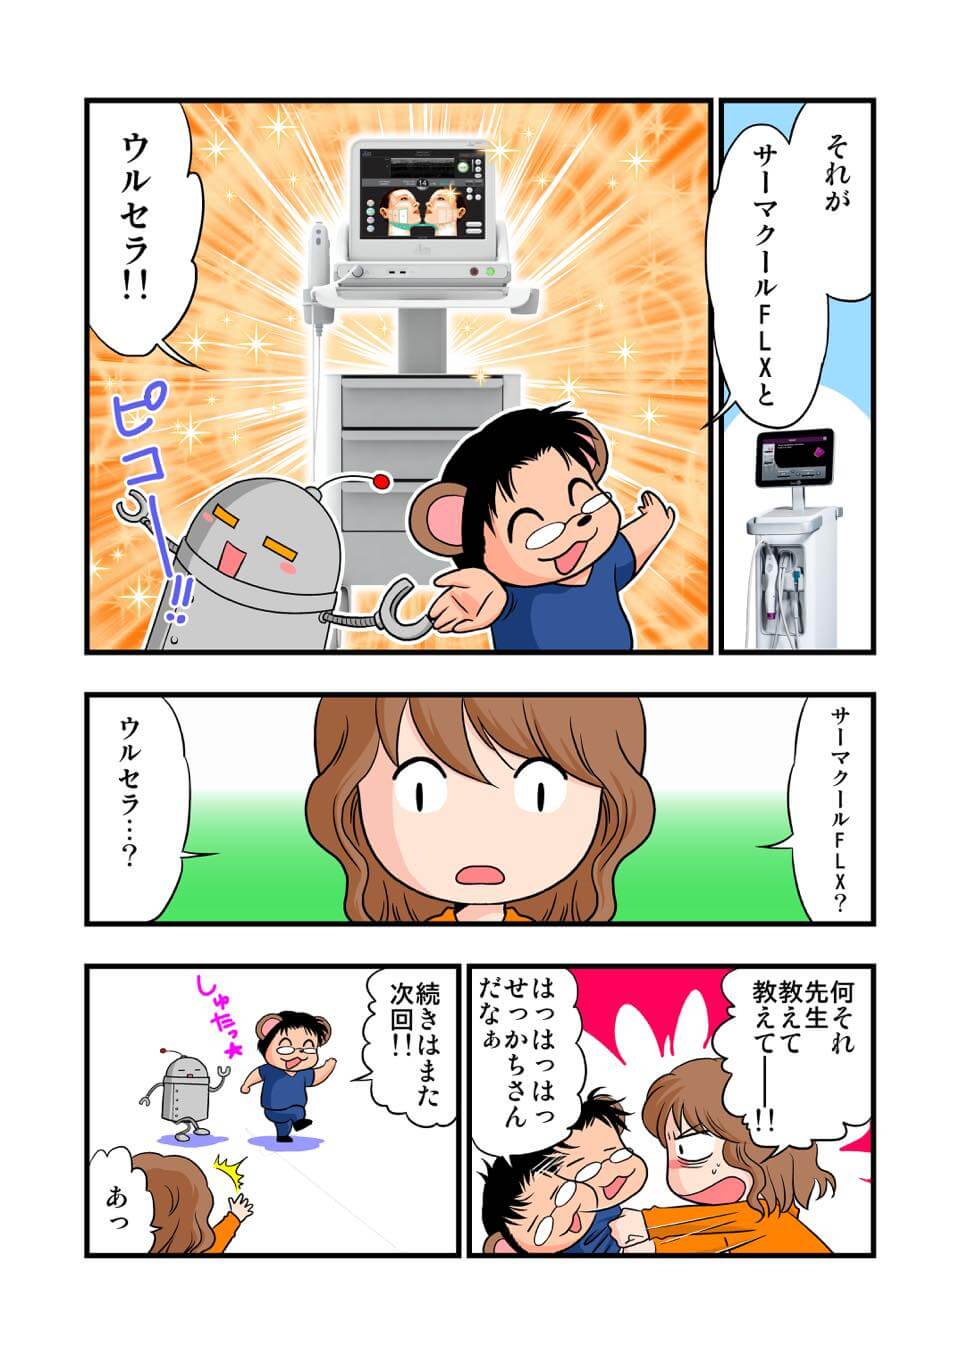 東京美容皮膚科クリニック公式漫画 8P